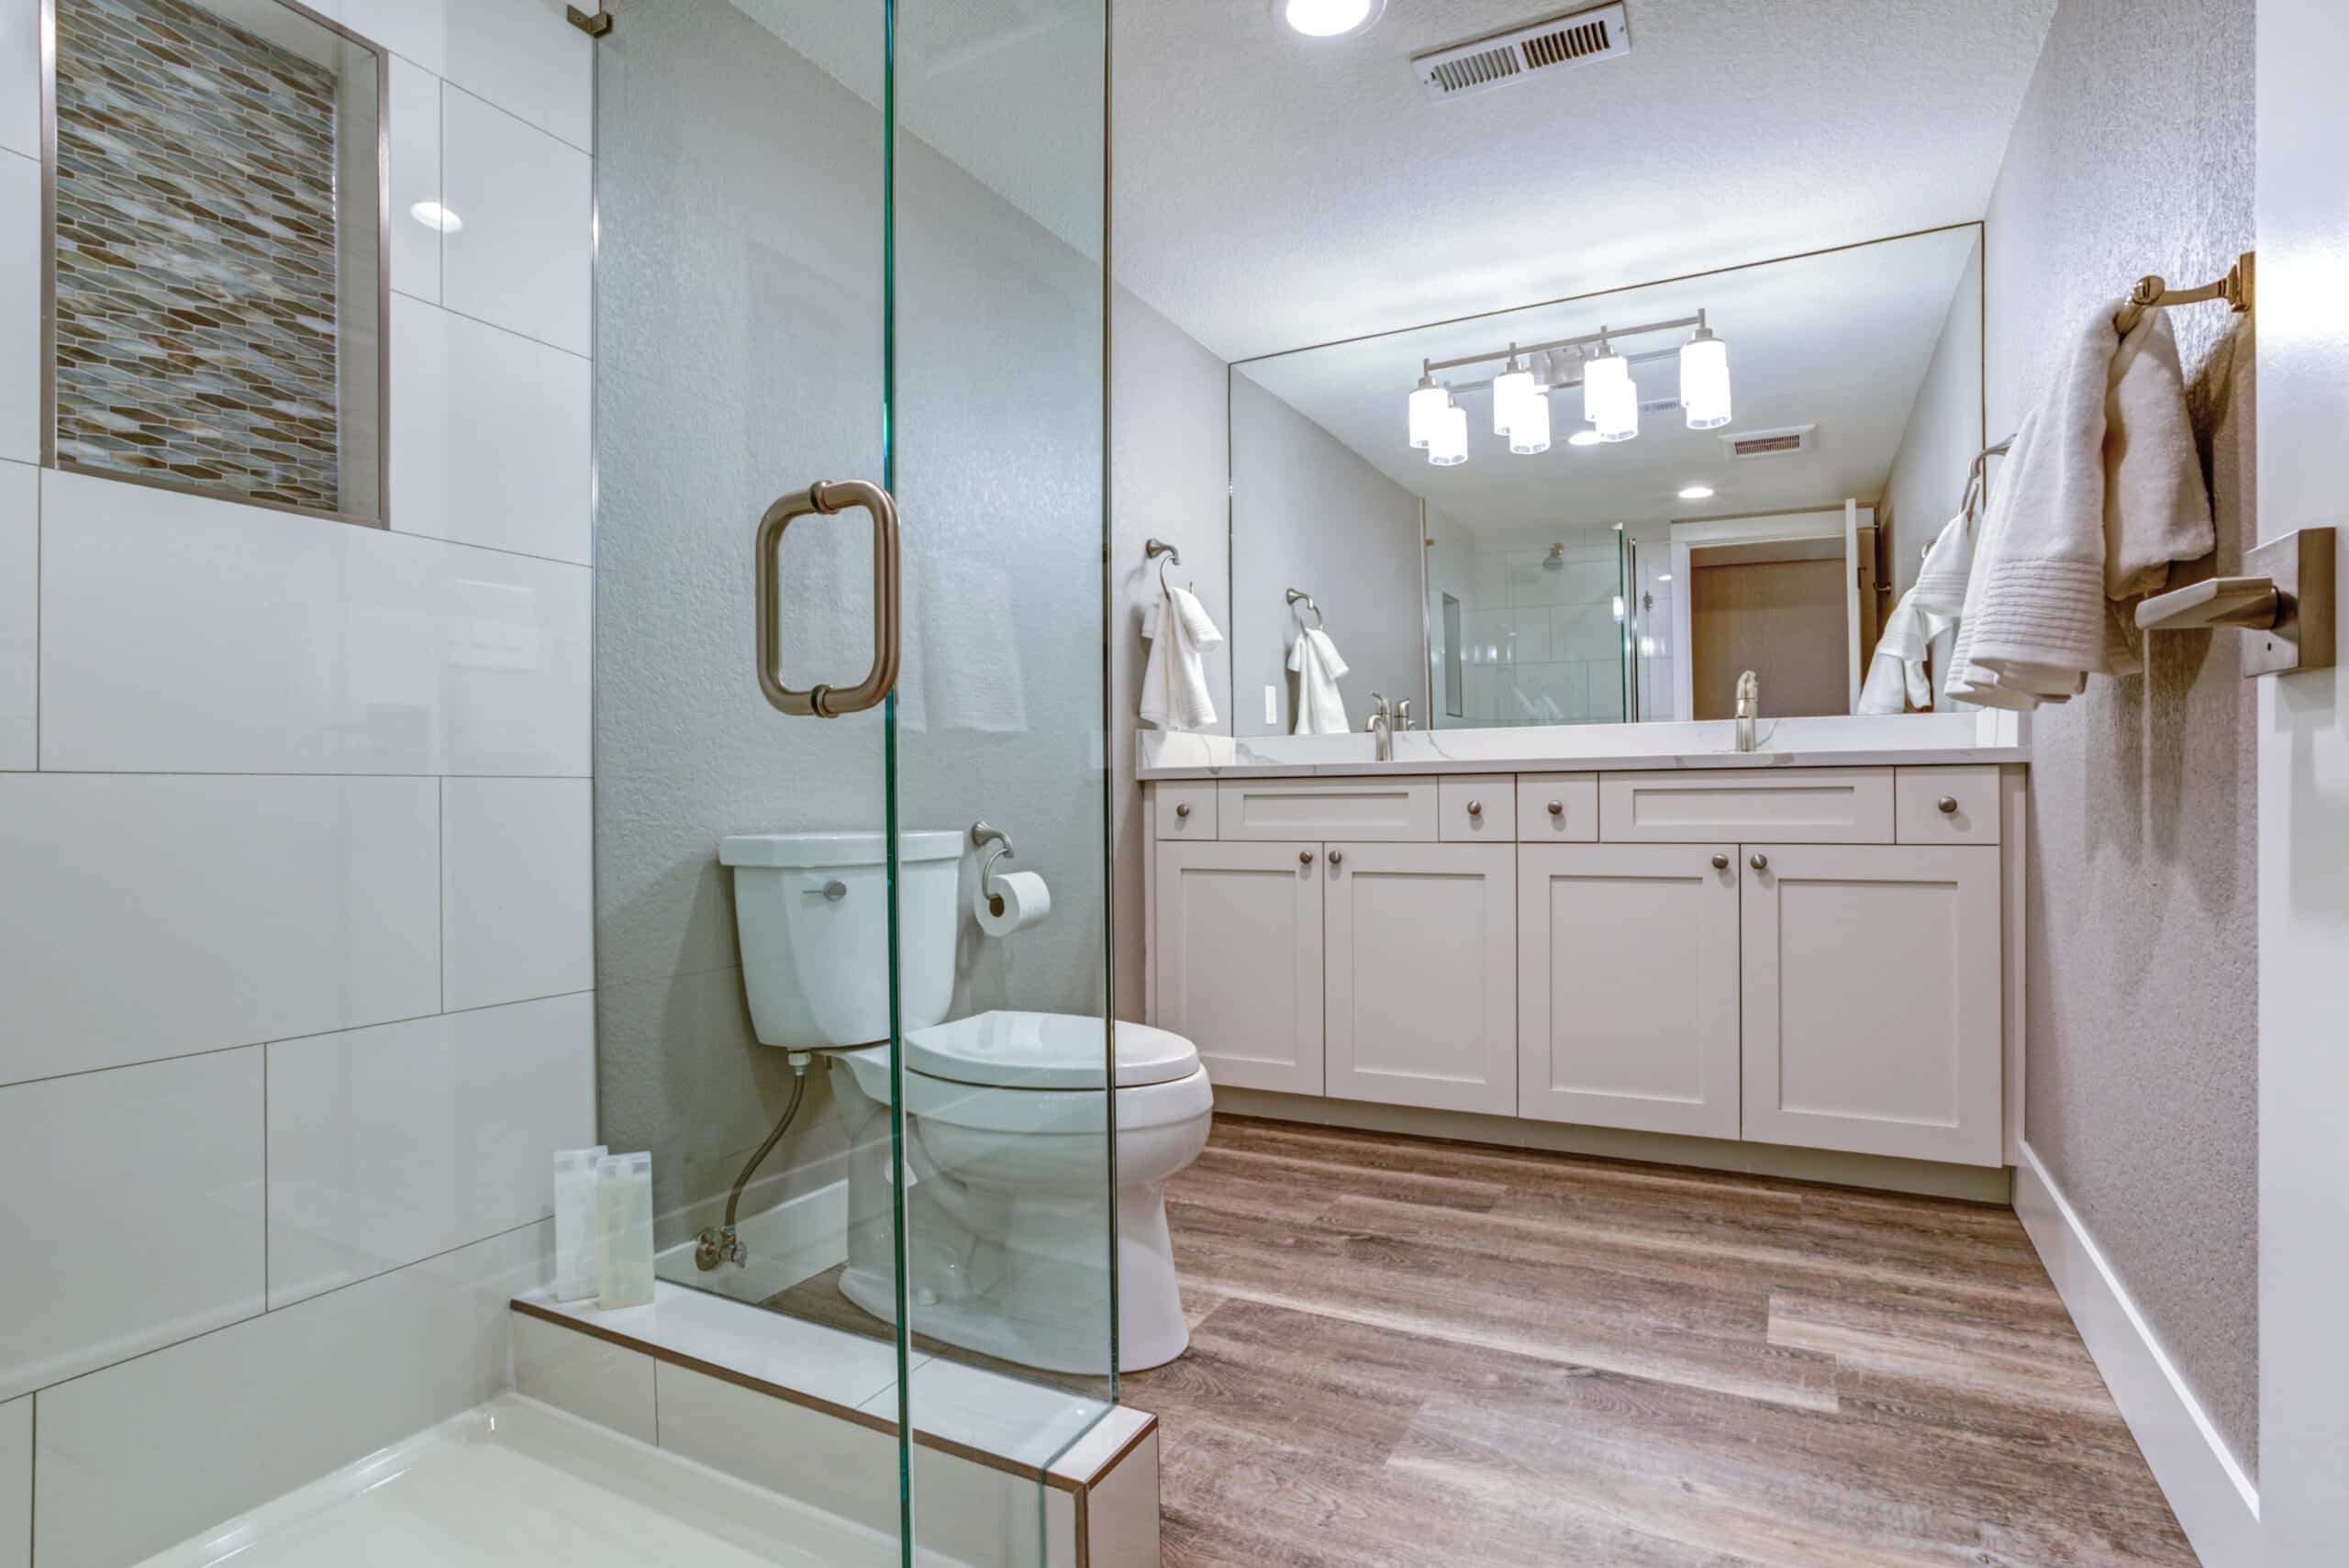 Elegant master bathroom with double vanity cabinet over hardwood floor.